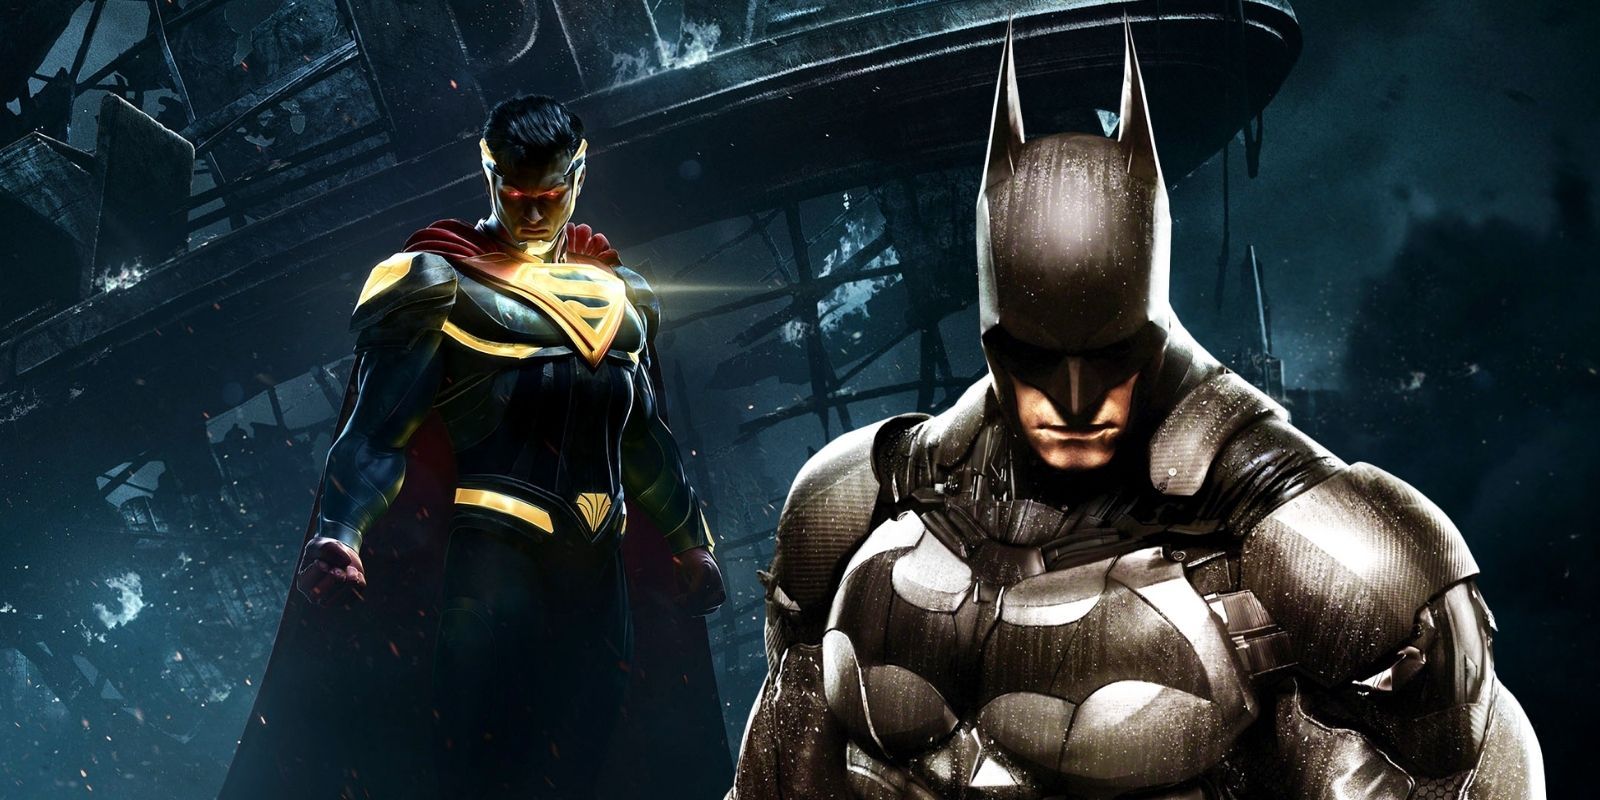 Superman in Injustice 2 standing alongside Batman in Arkham Knight